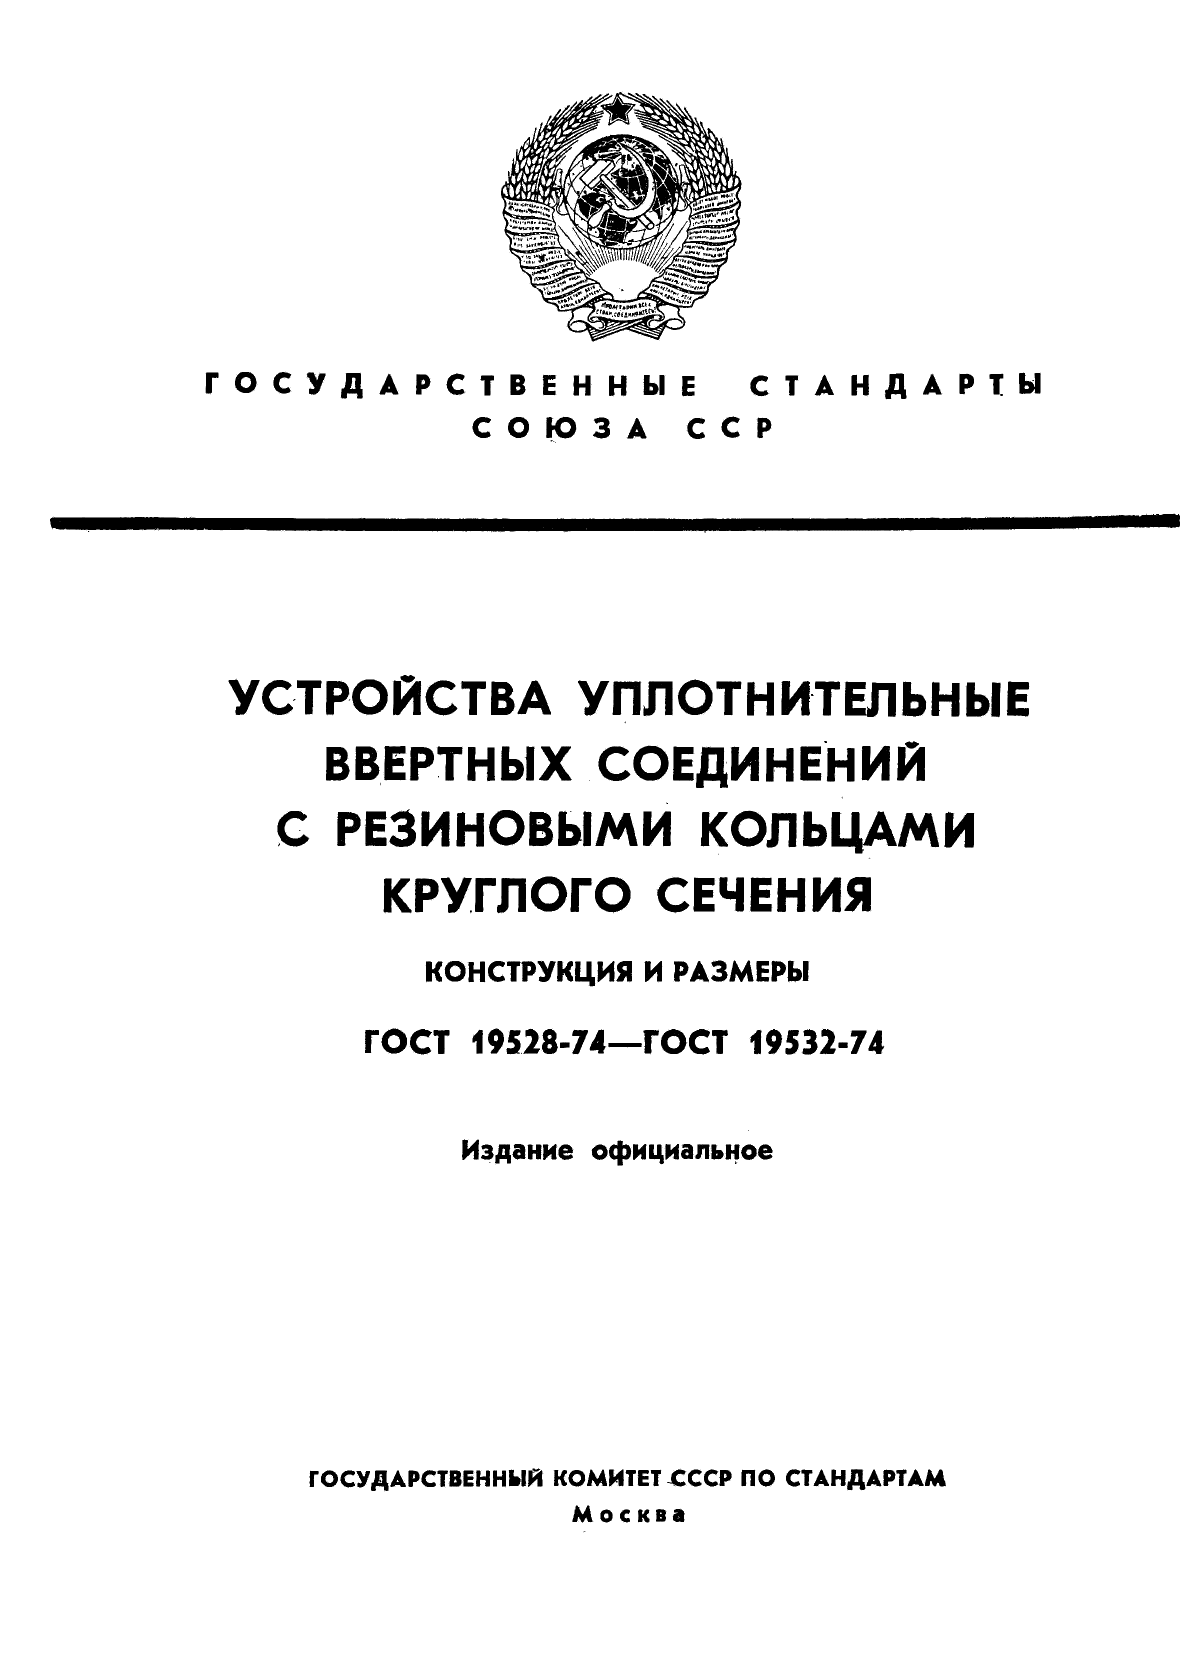  19528-74,  1.